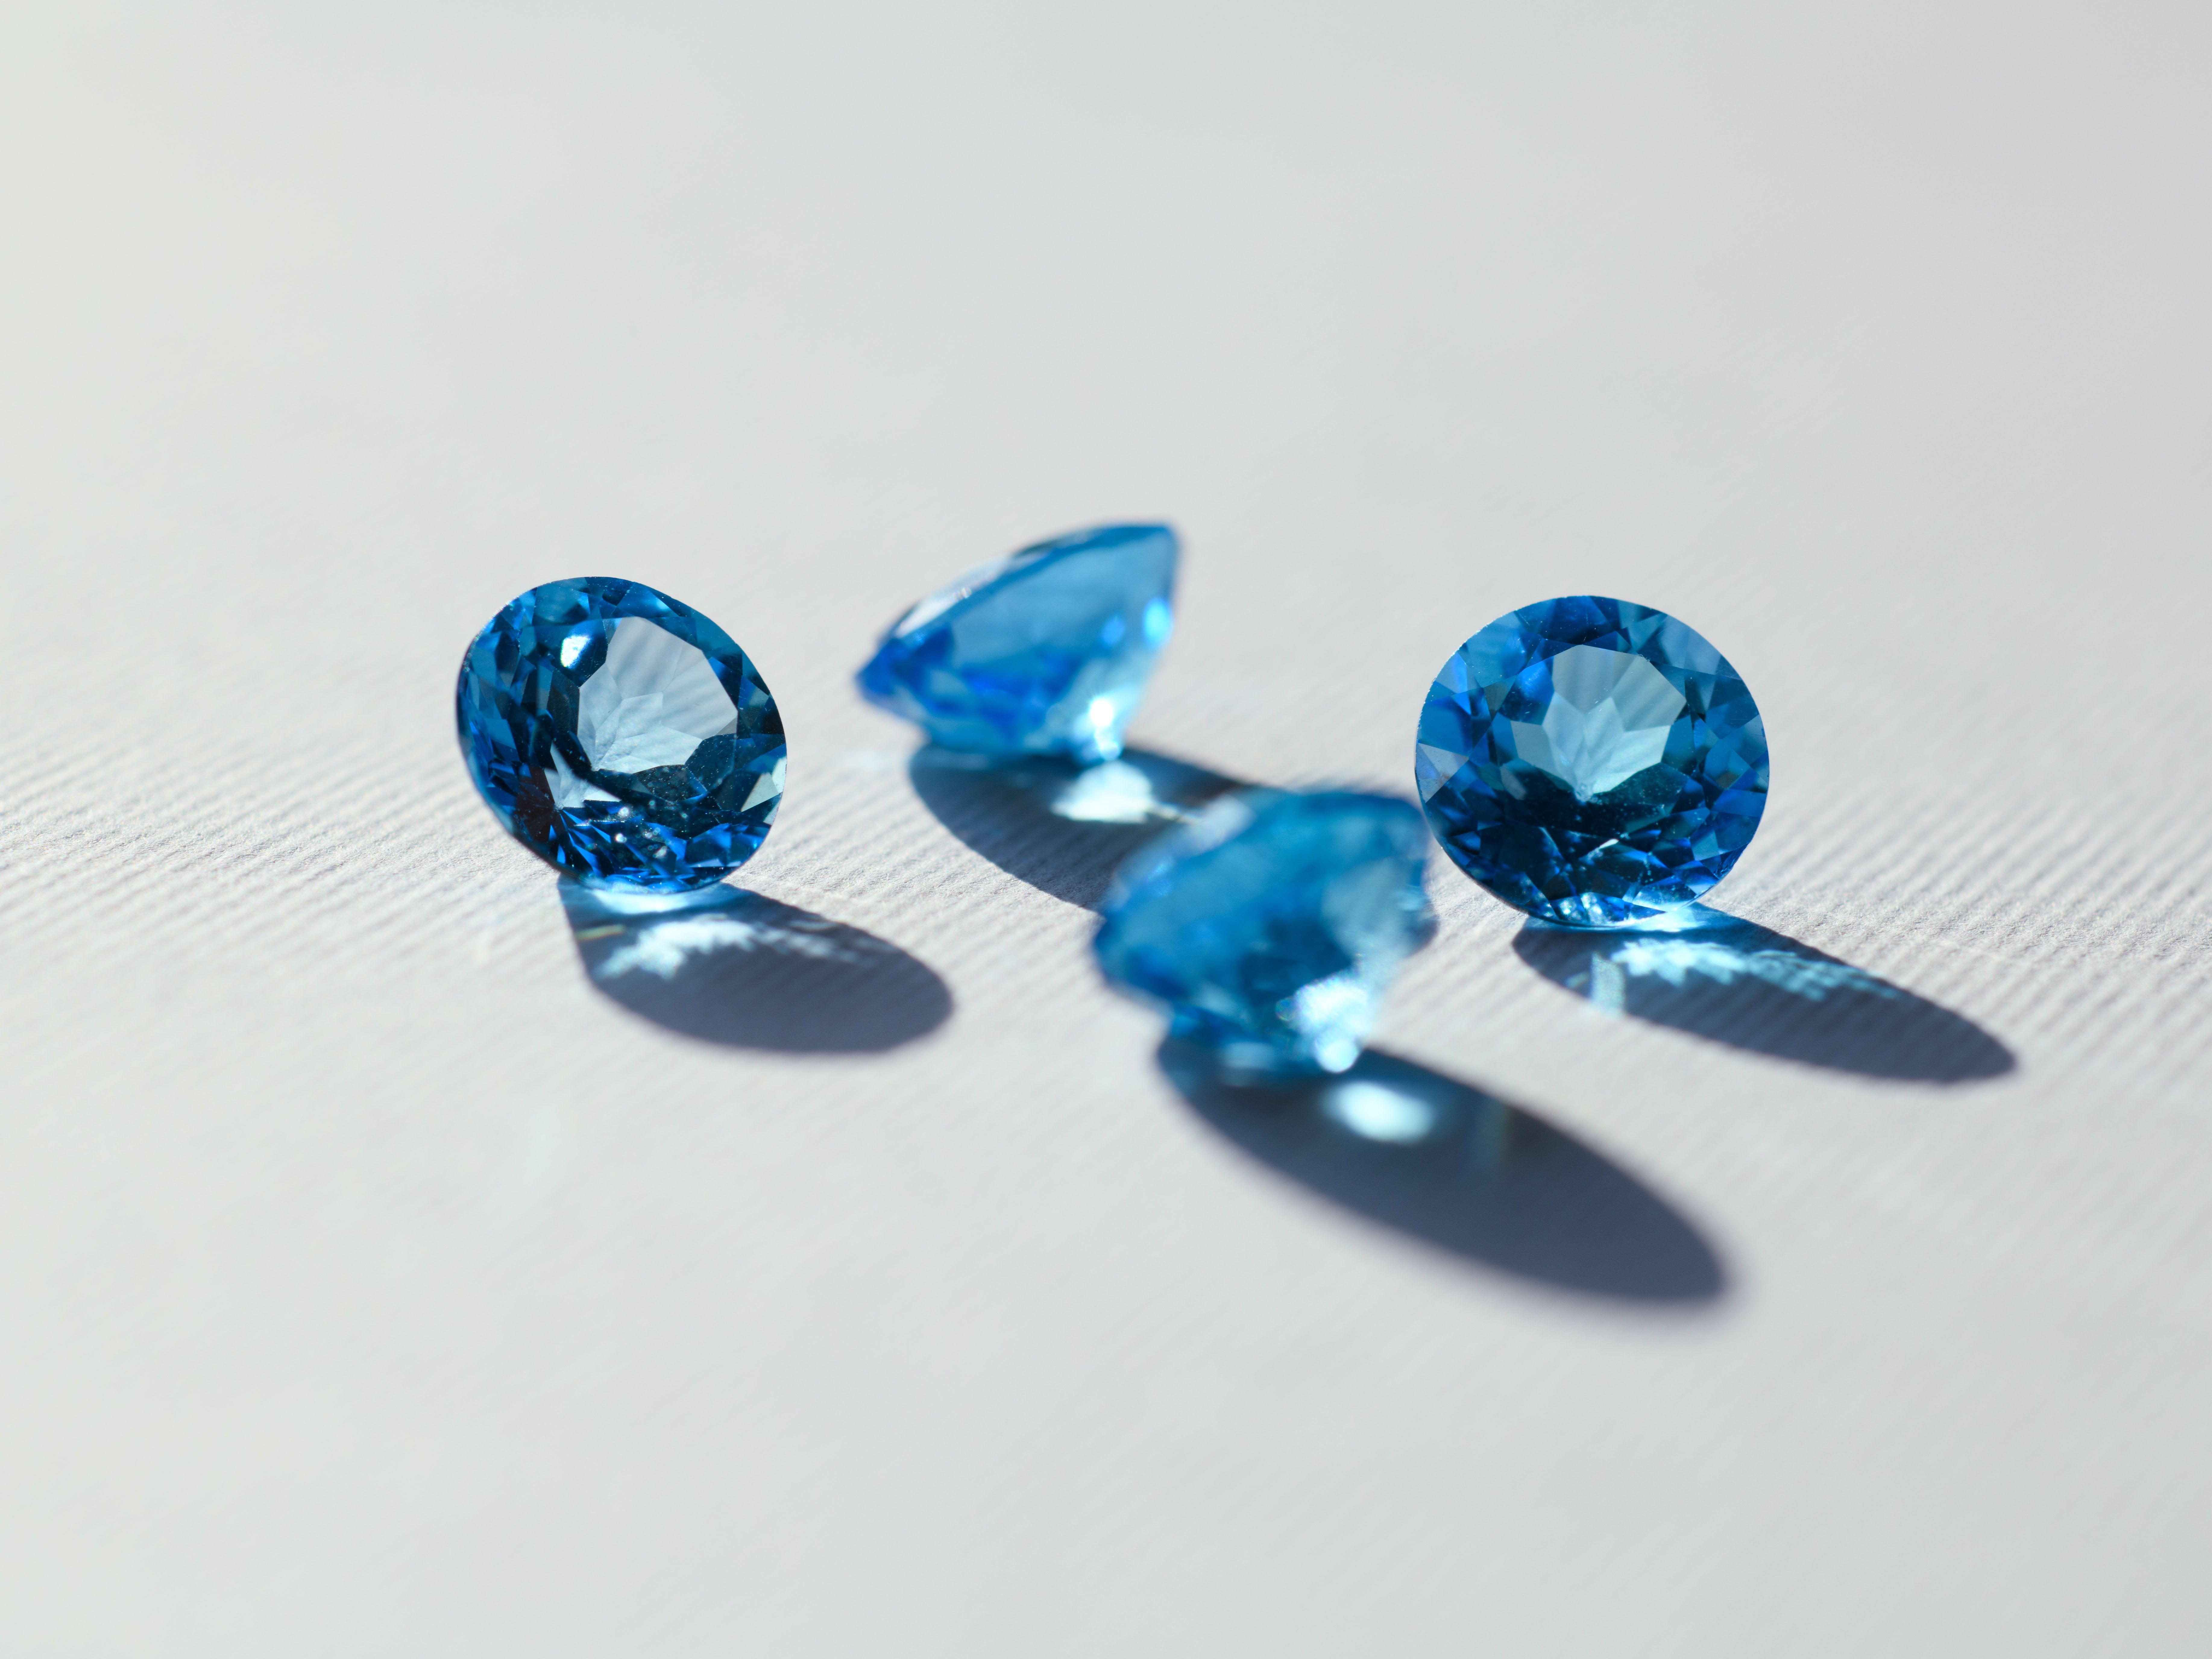 Ritani Colored Lab-grown Diamonds